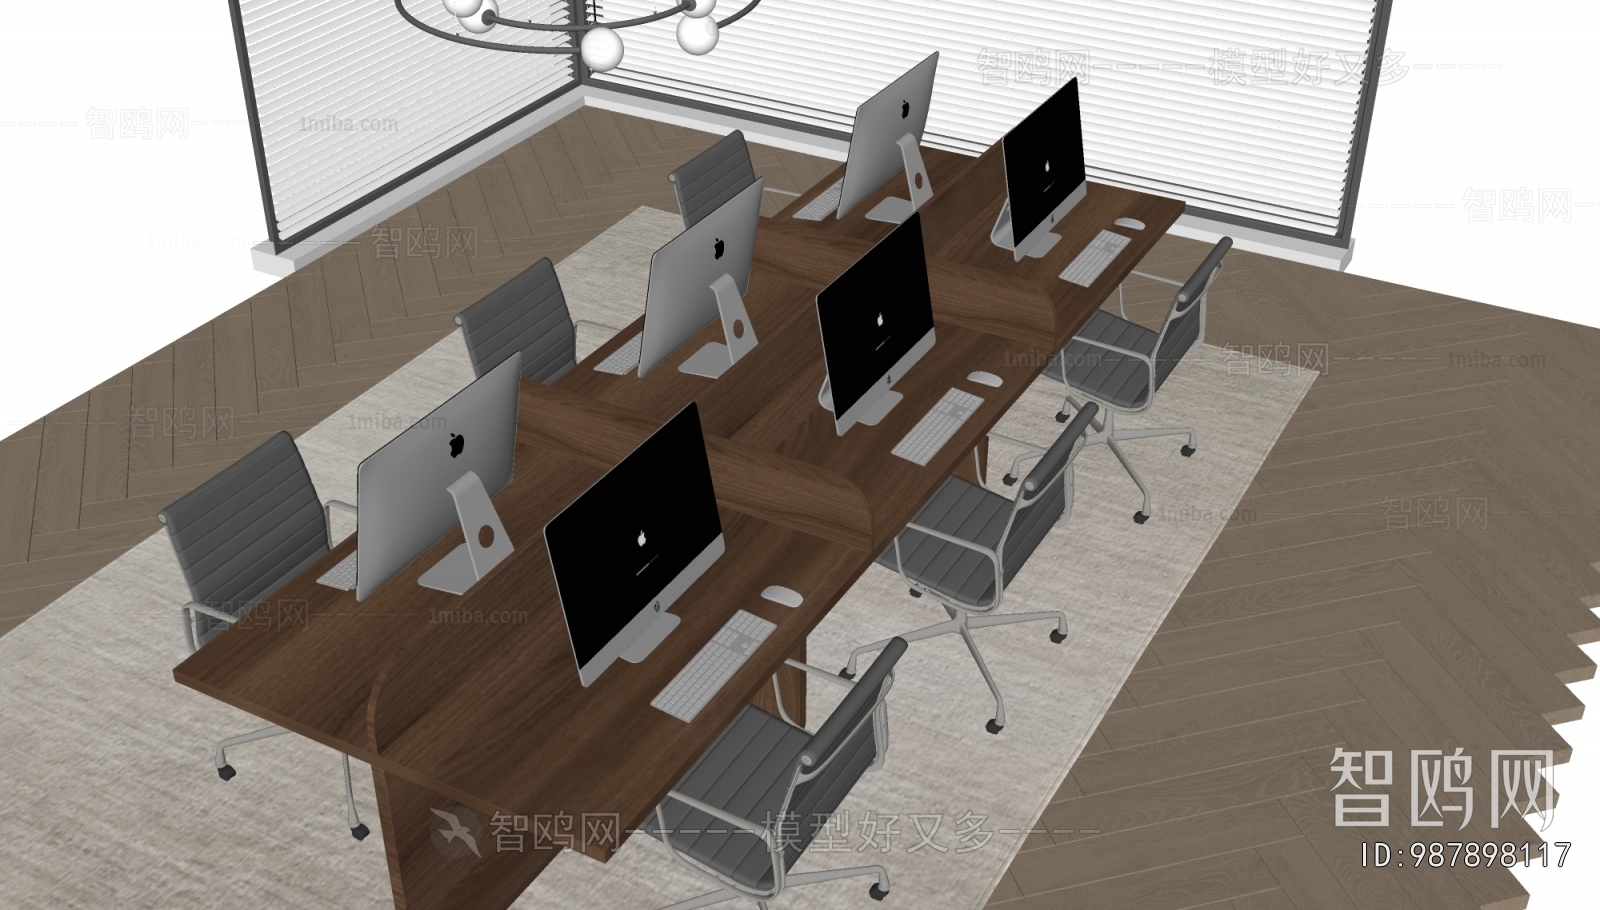 现代员工办公桌椅组合3D模型下载